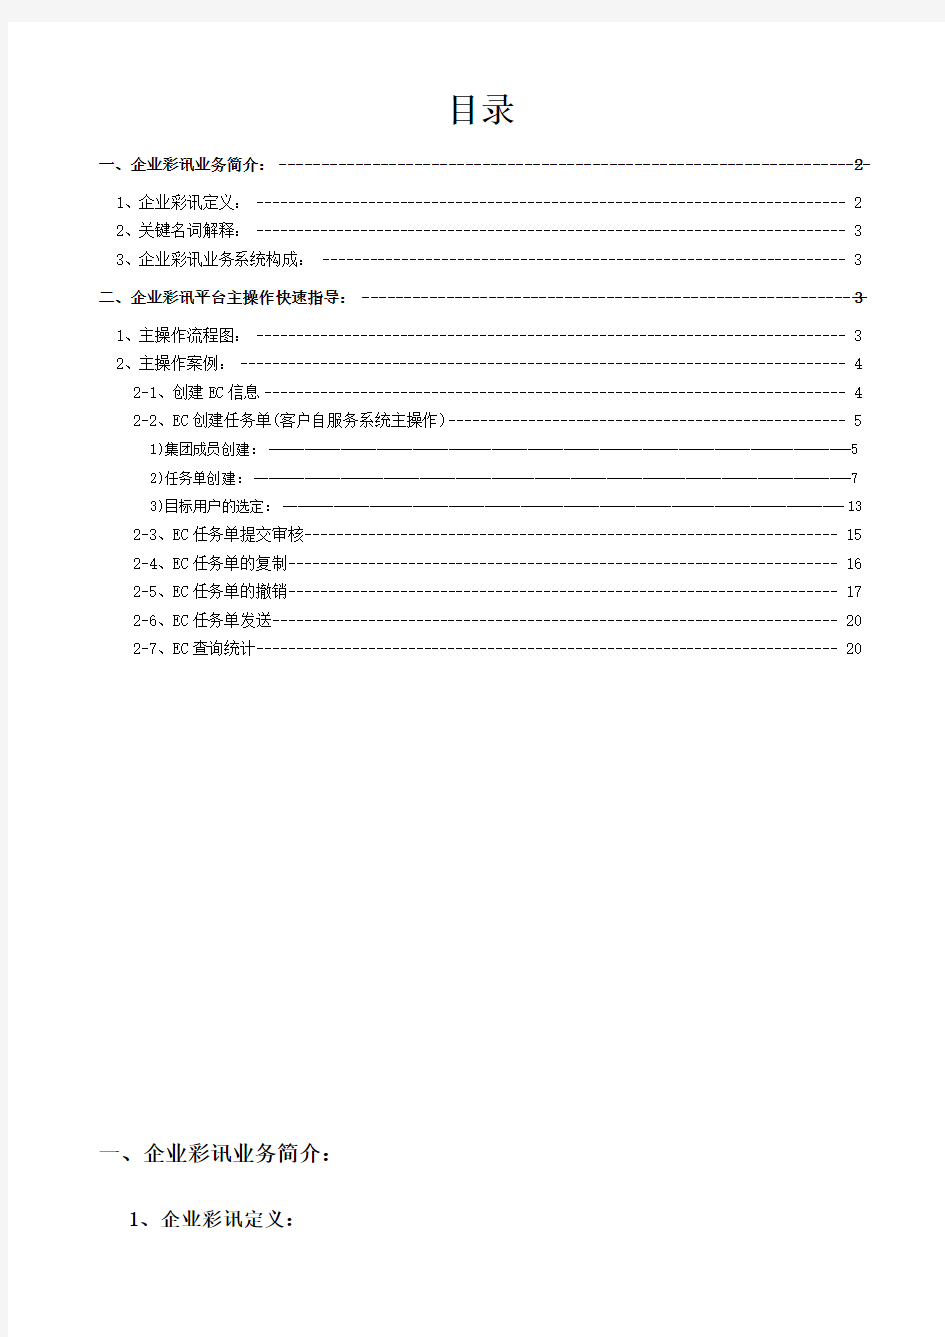 中国移动-彩讯客户自服务系统操作指导手册